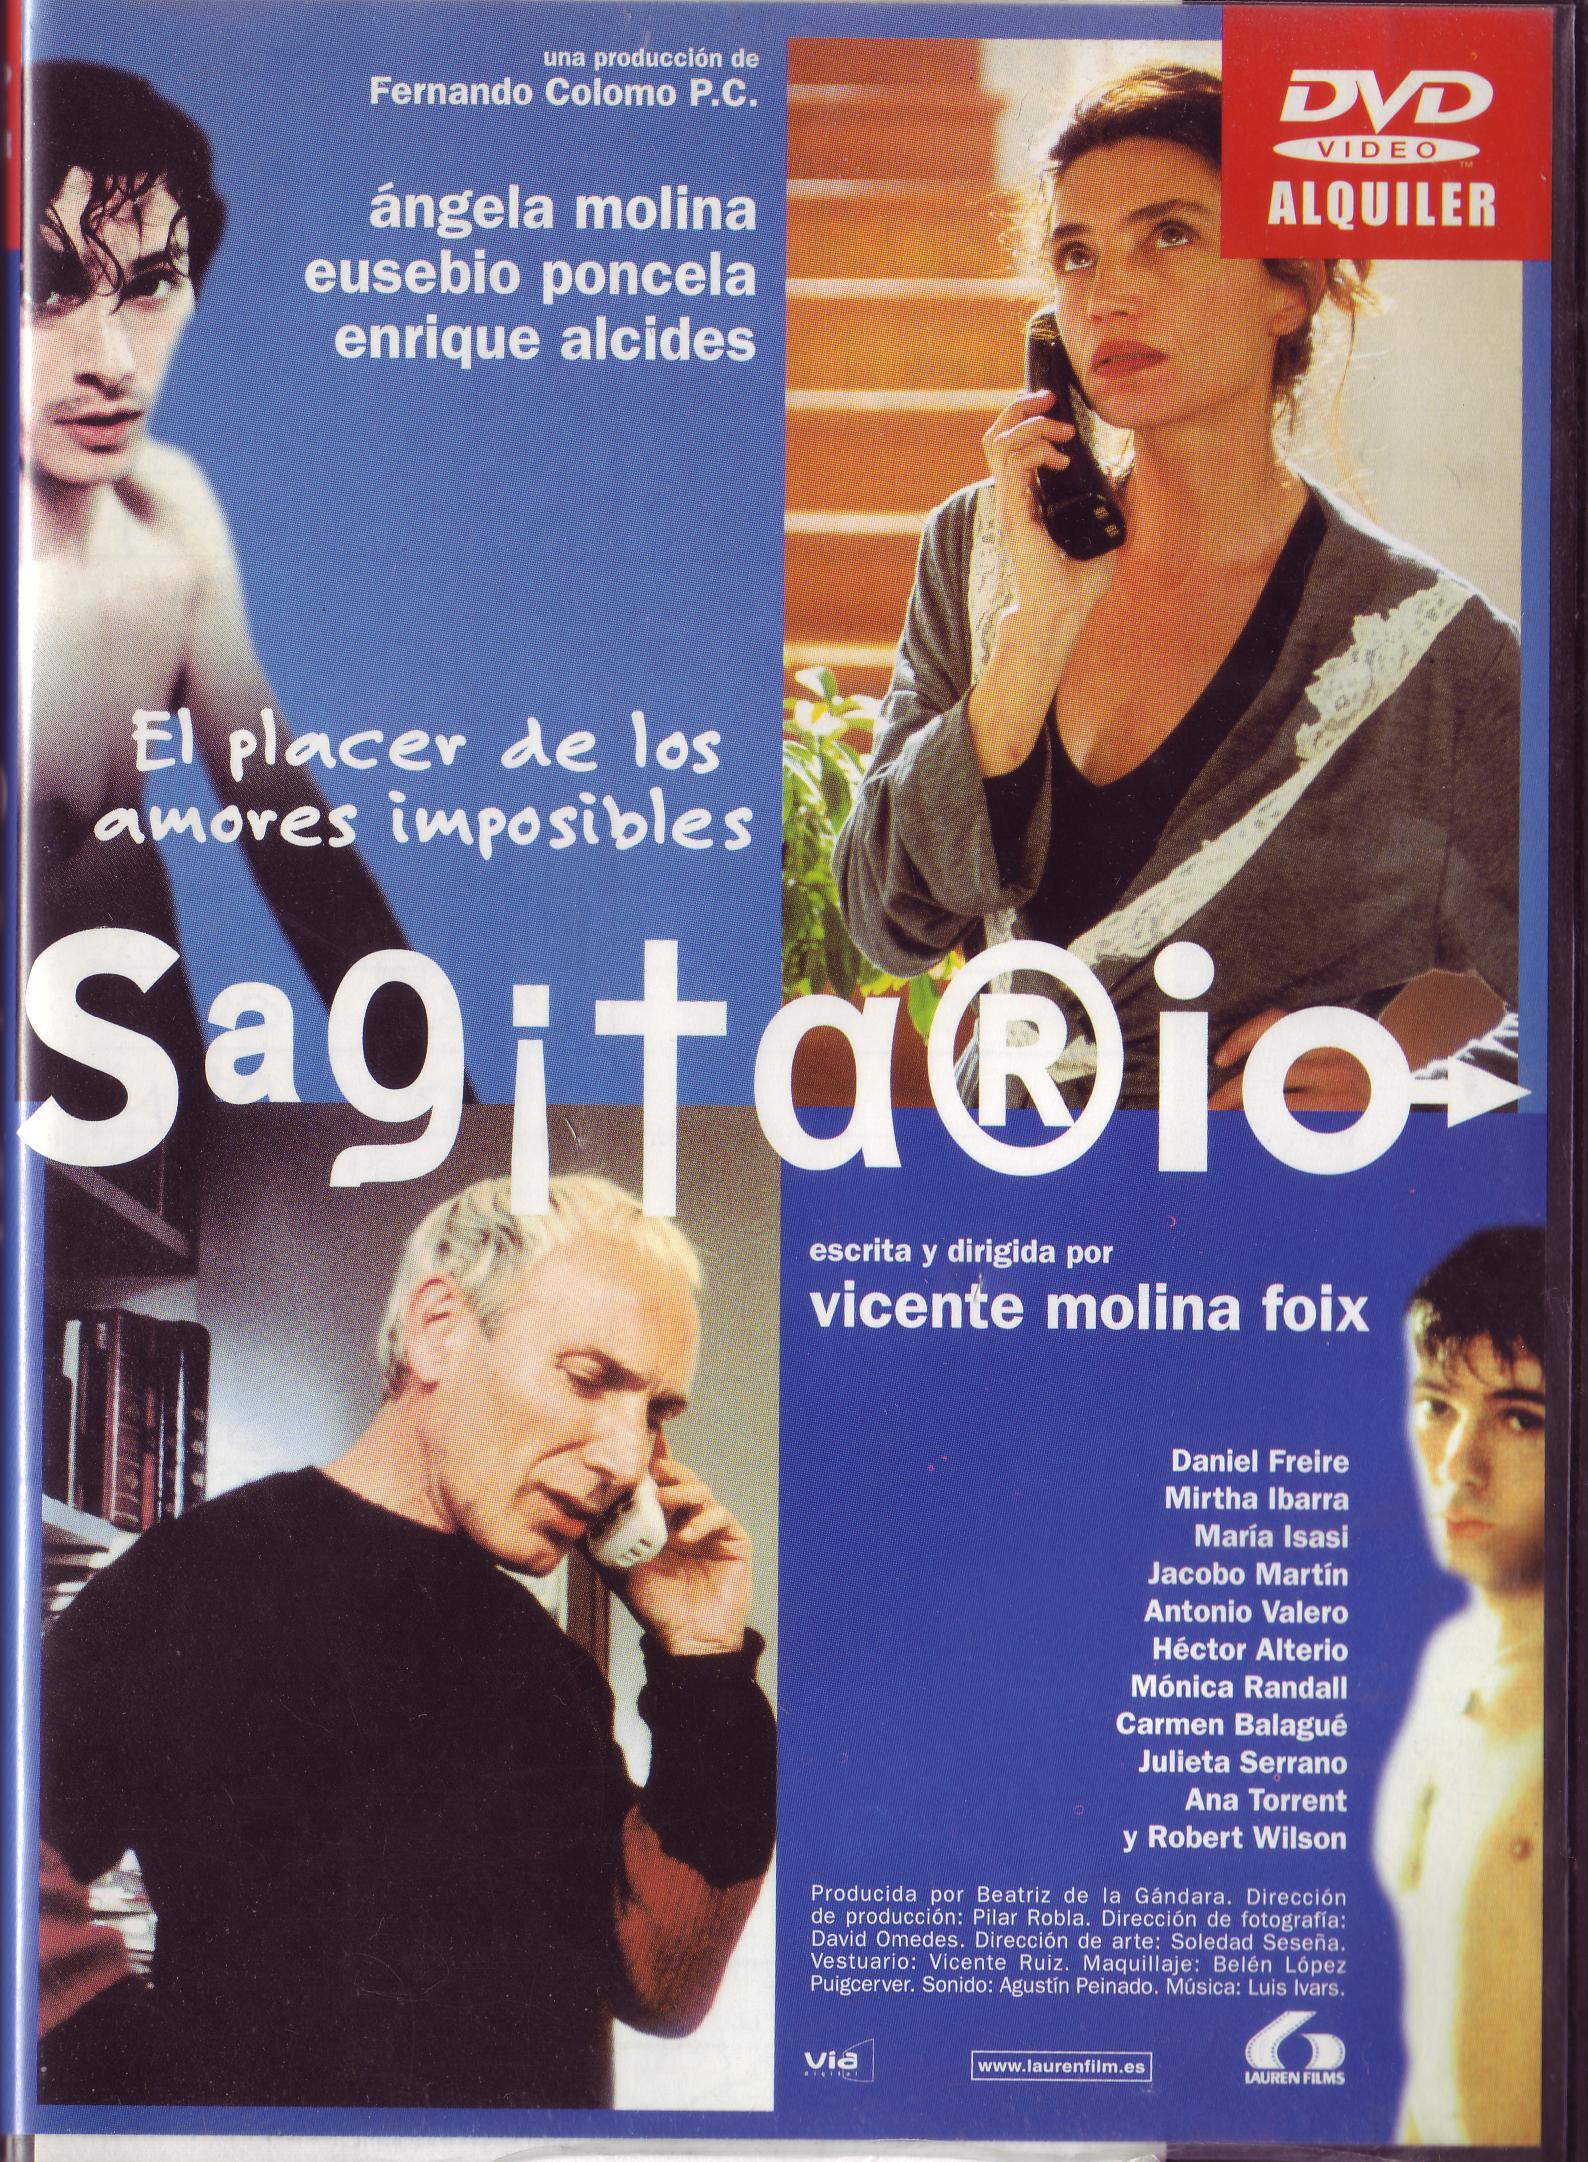 Sagitario´s film afiche with Ángela Molina and Eusebio Poncela